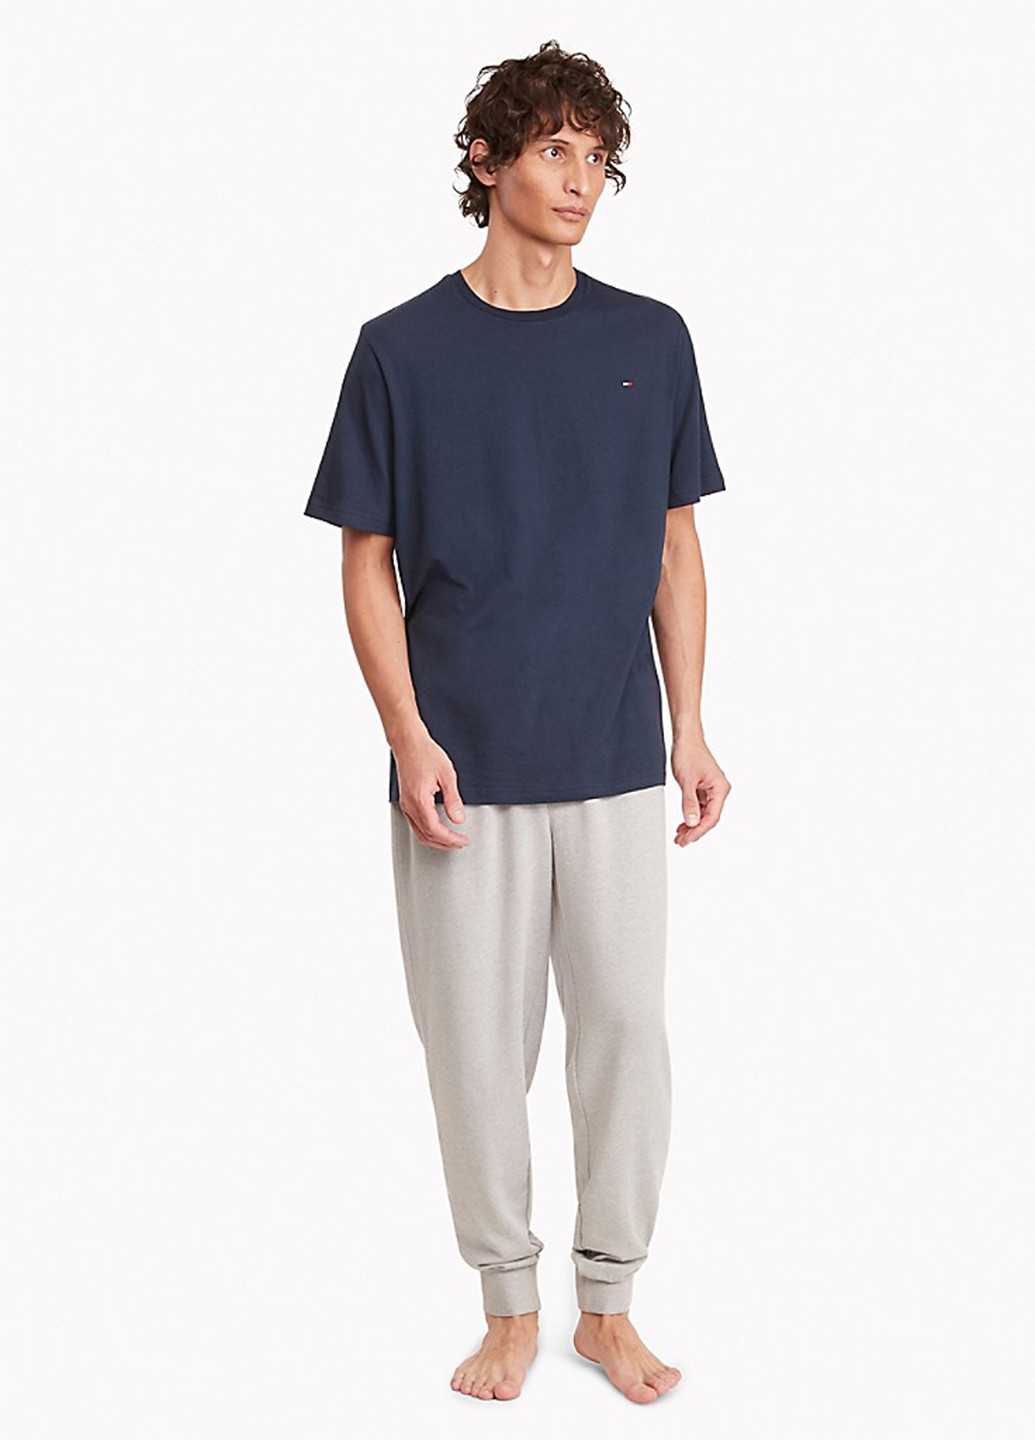 Пижама (футболка, брюки) Tommy Hilfiger футболка + брюки меланж серо-синяя домашняя трикотаж, хлопок